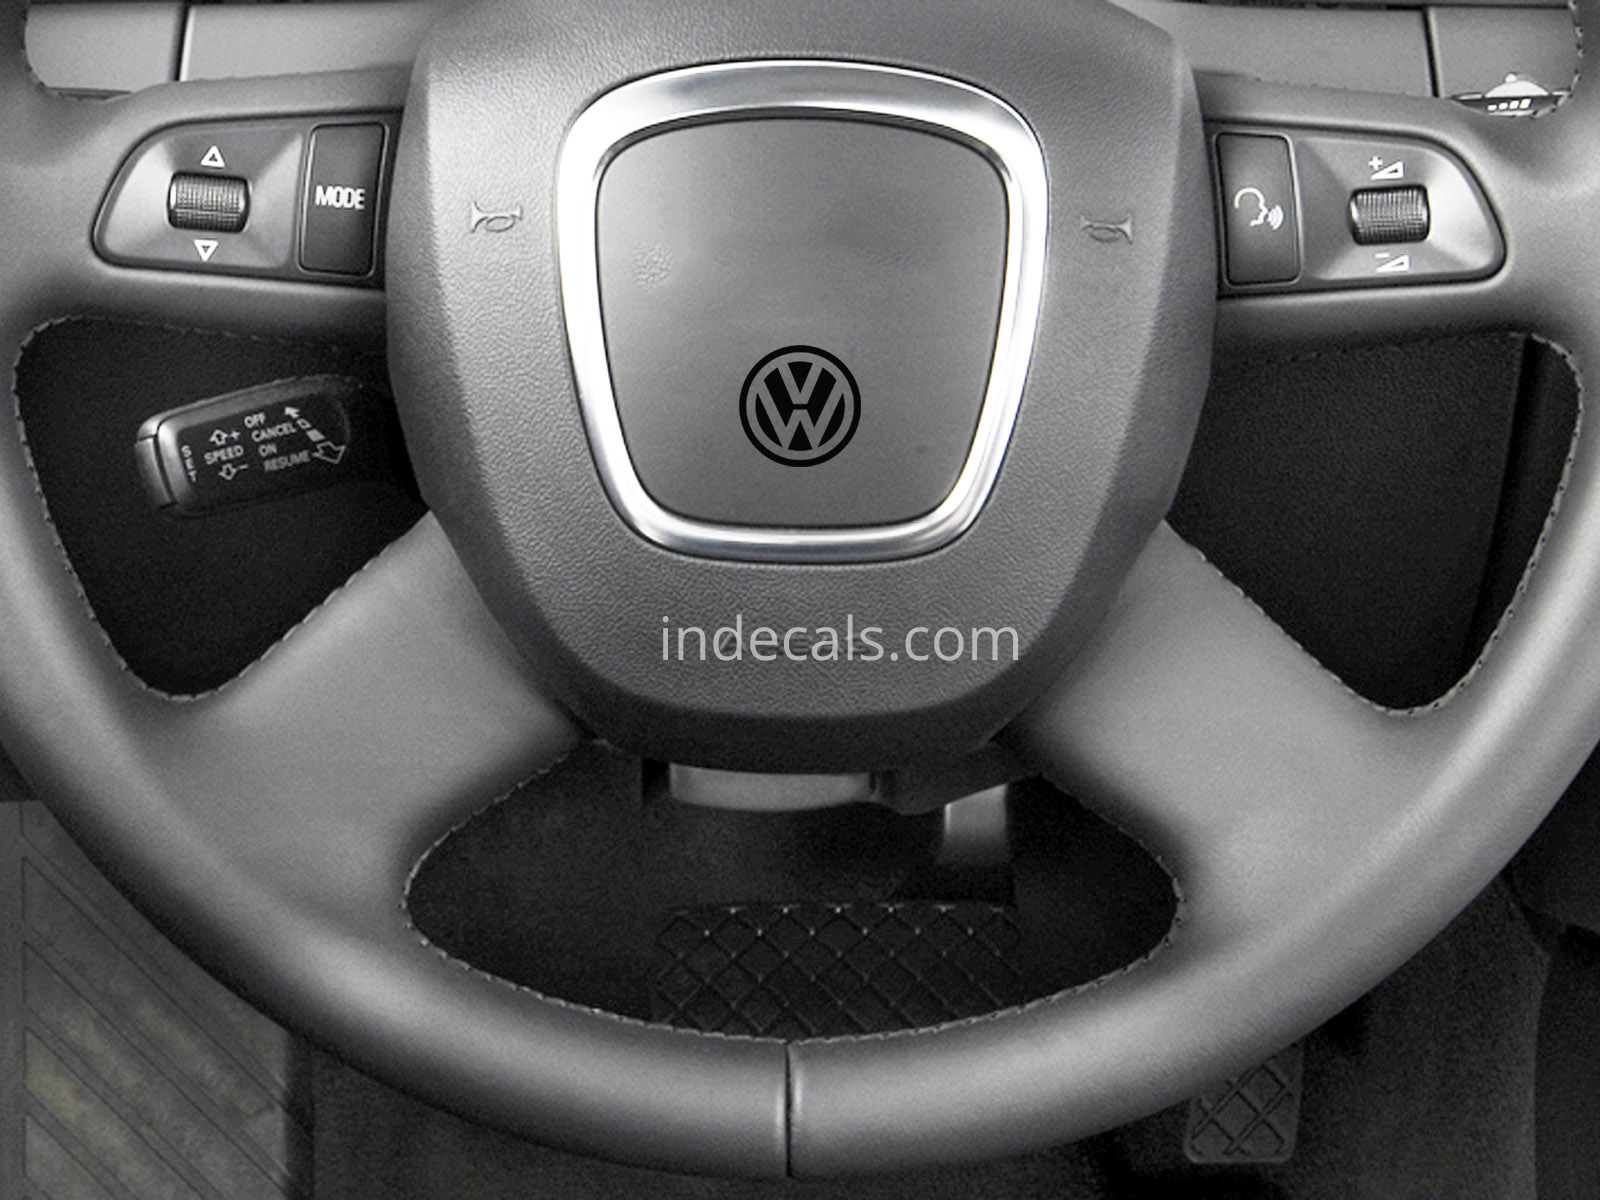 3 x Volkswagen Stickers for Steering Wheel - Black